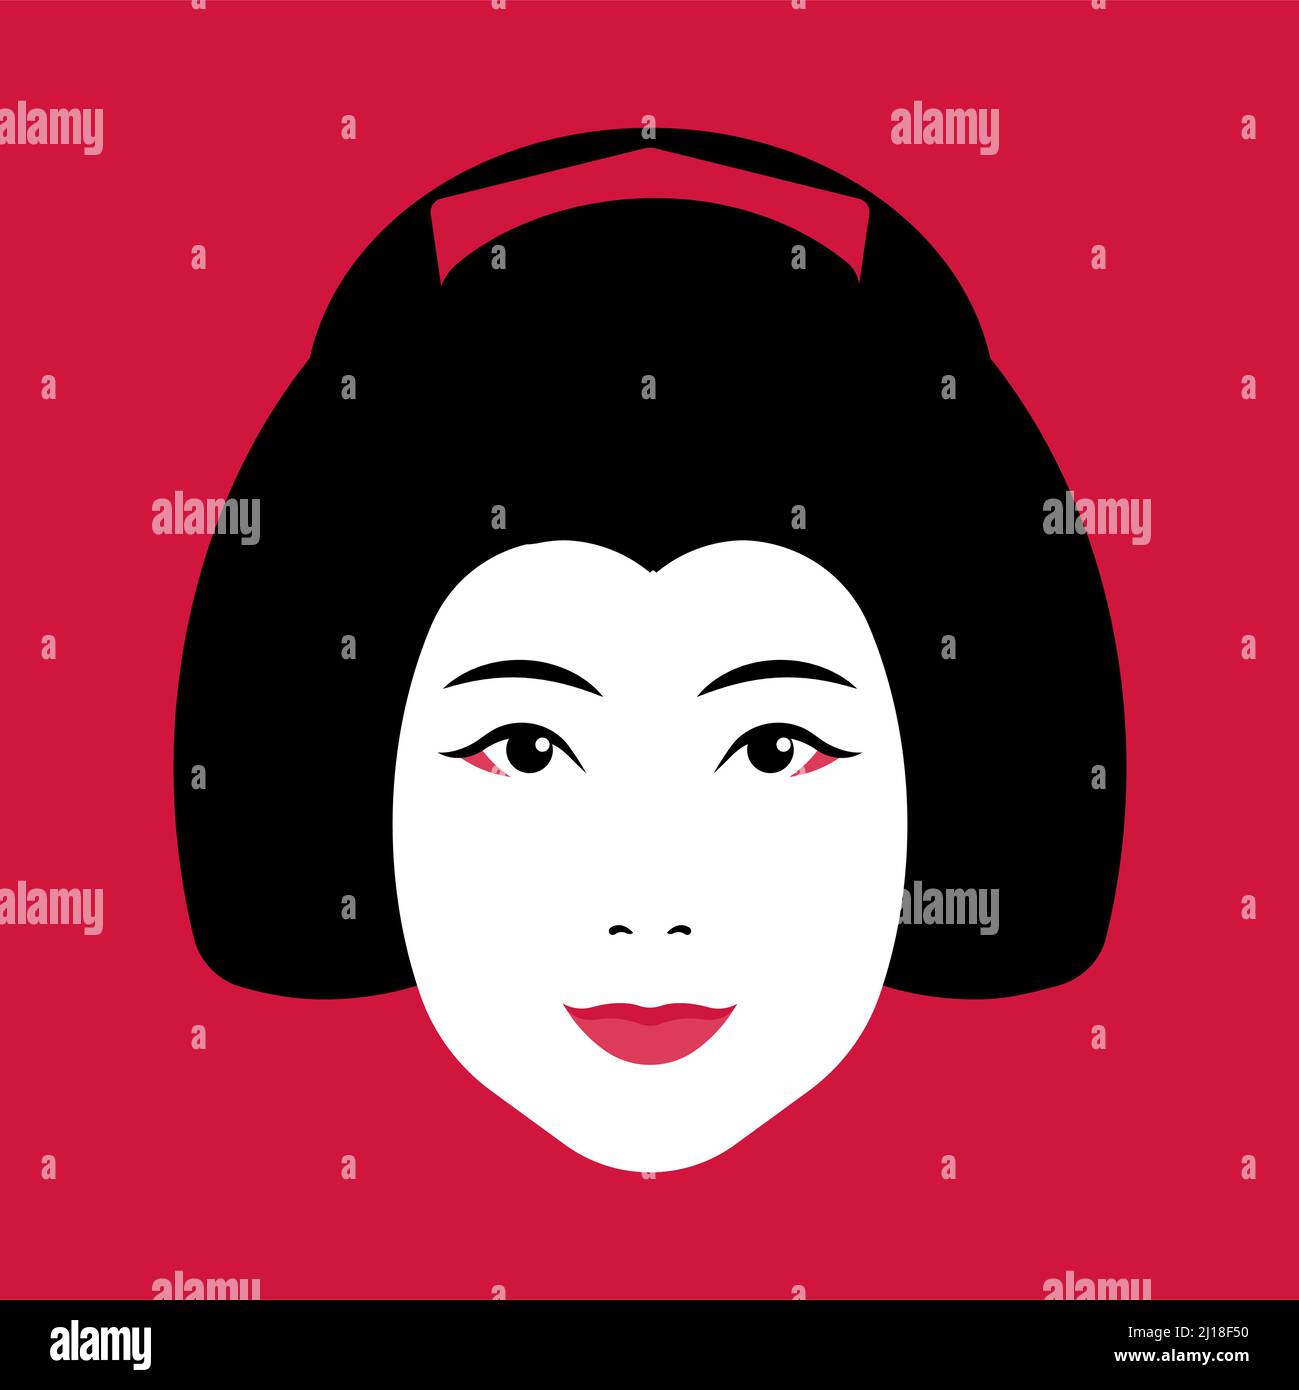 Geisha Face - geisha giapponese con make-up, acconciatura, pettini. Faccia femminile in primo piano su sfondo rosso. Concetto di cultura giapponese, garm tradizionale Illustrazione Vettoriale